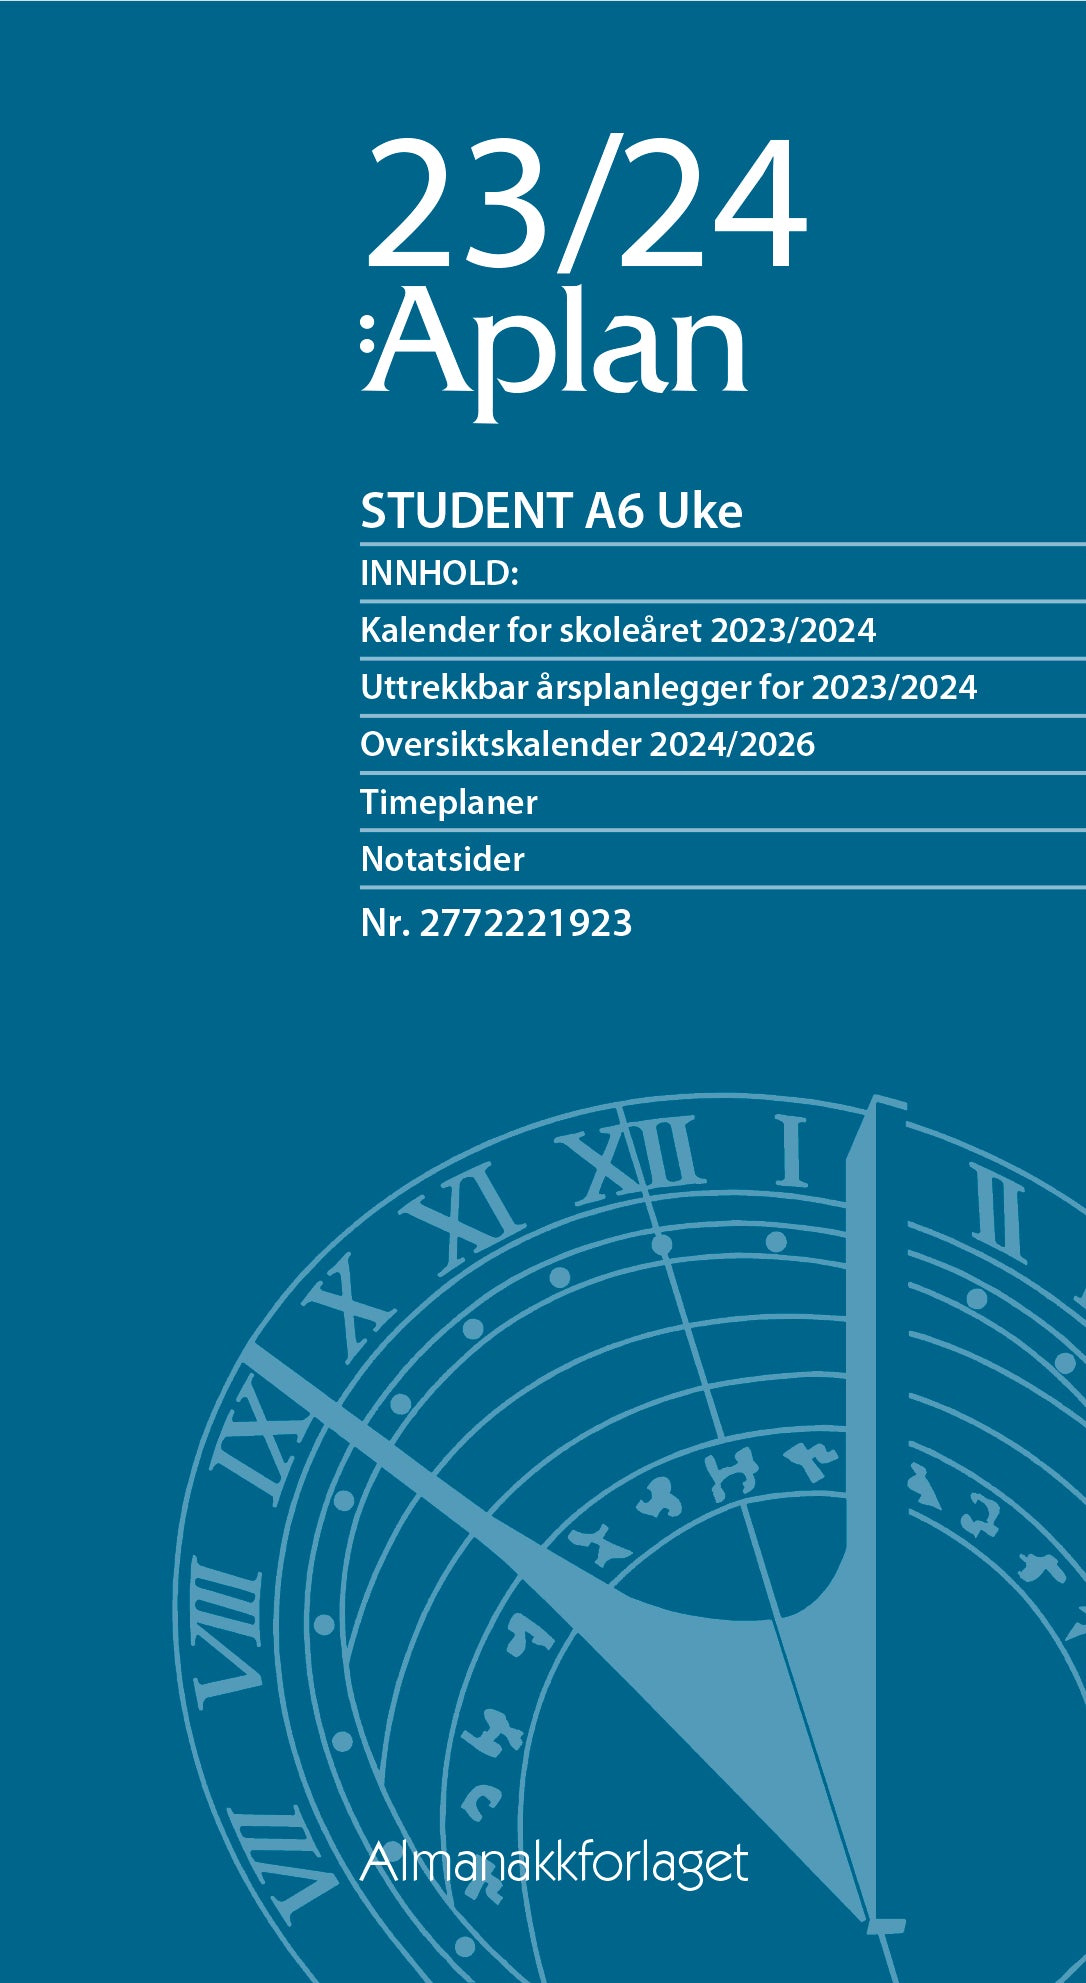 Aplan Student A6 Uke årssett 2023/24, forside